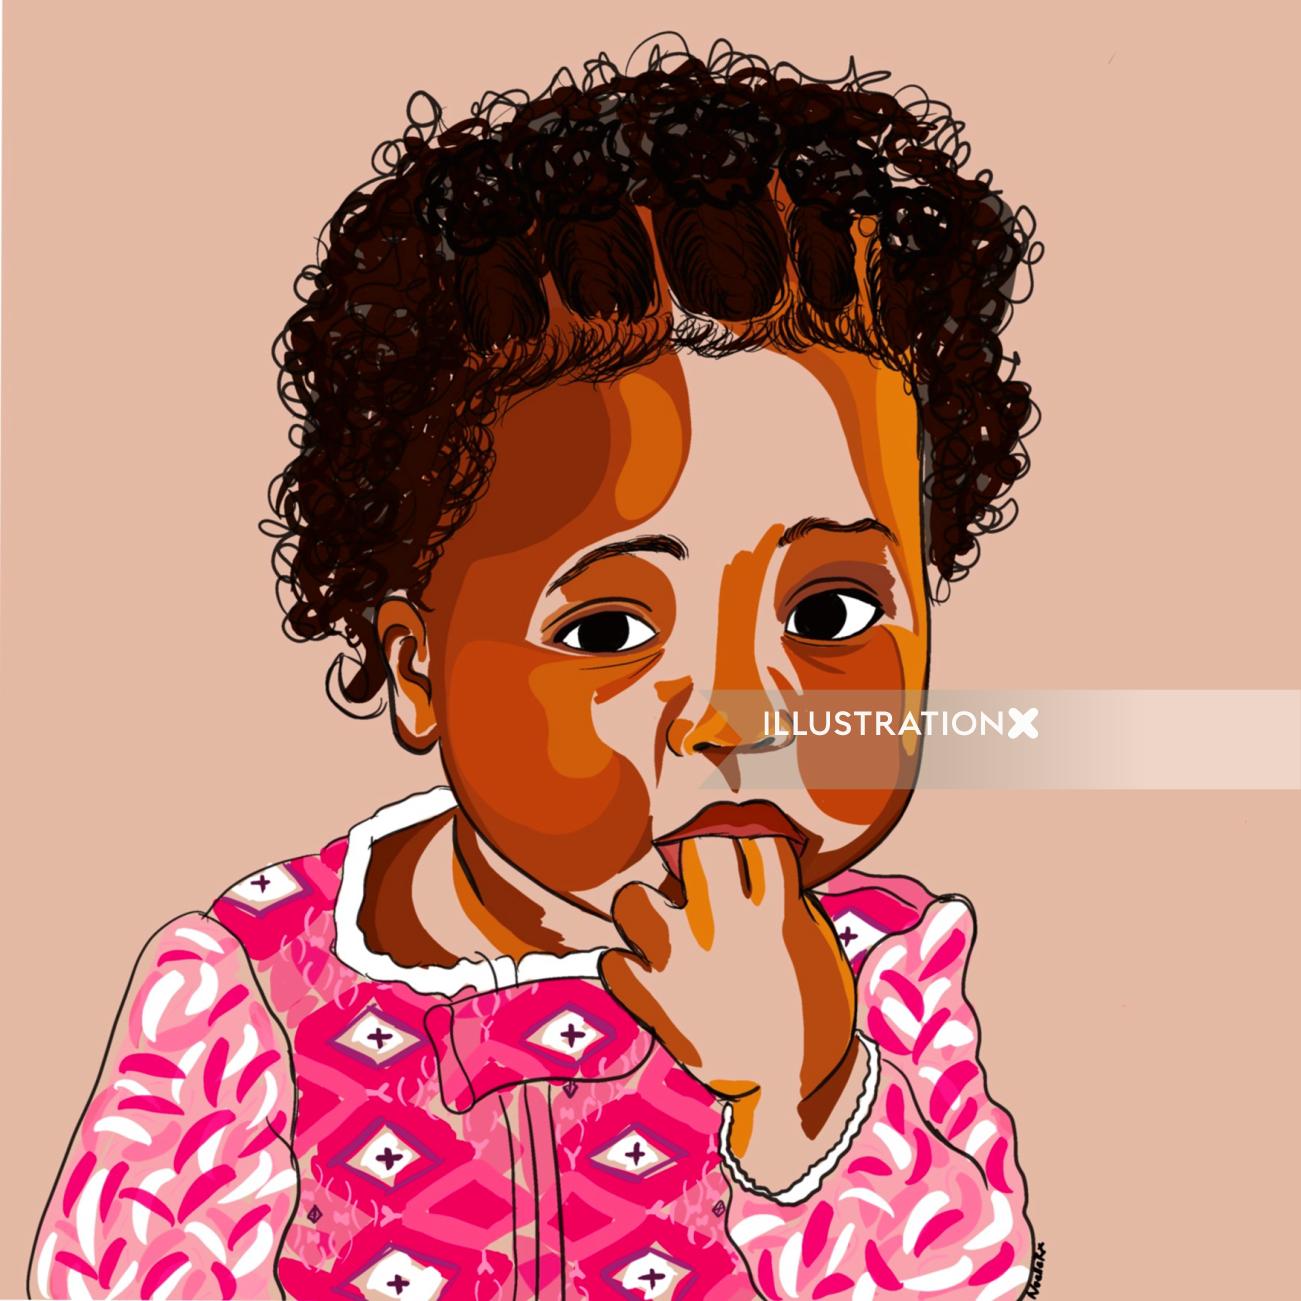 Cute baby girl portrait illustration by NoelleRx